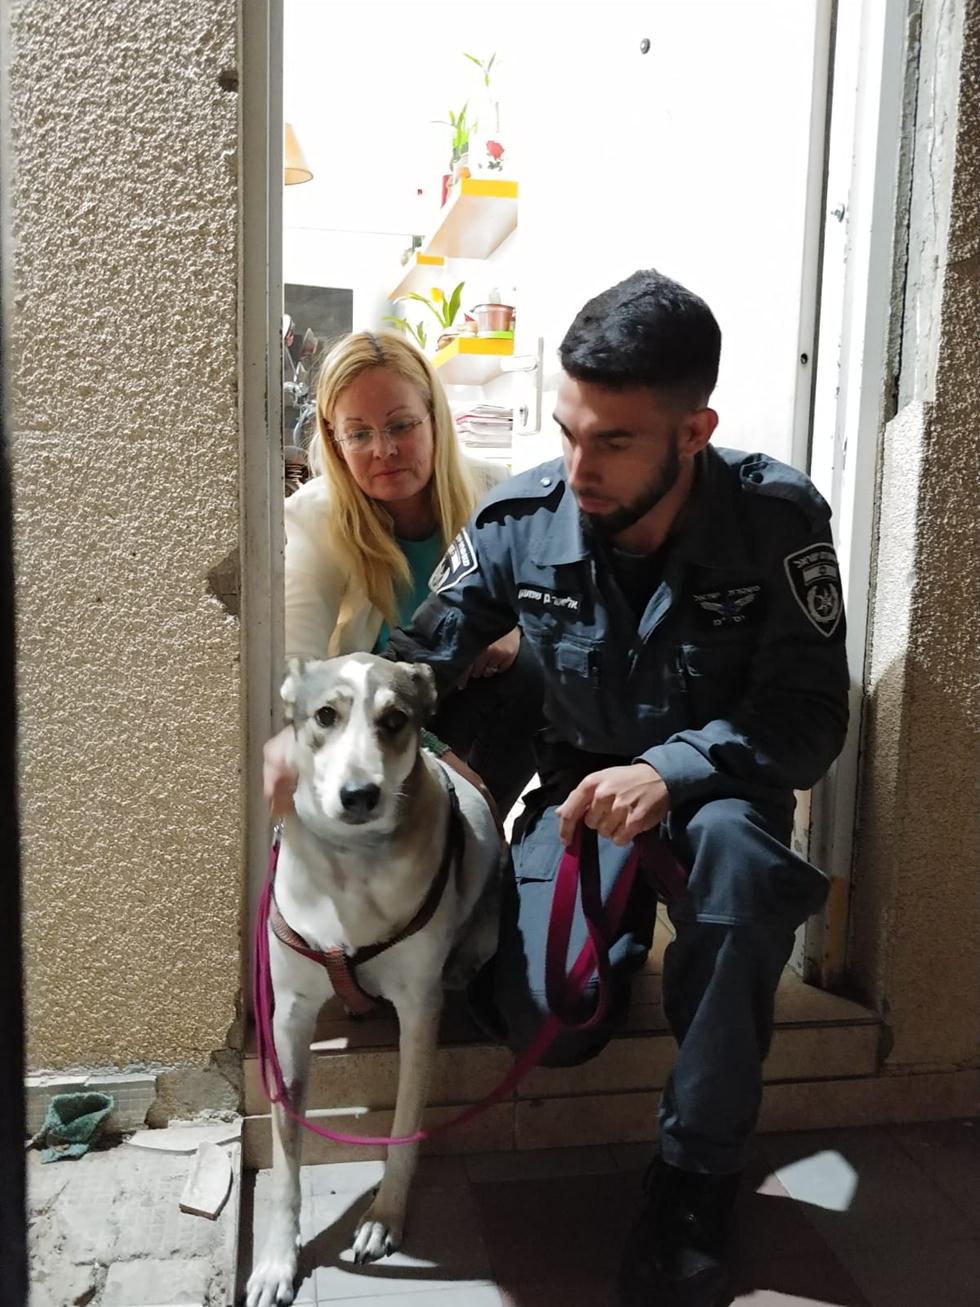 רגע הוצאת הכלבה מהבית בסיוע משטרת אילת (צילום: אילת אנימלס)